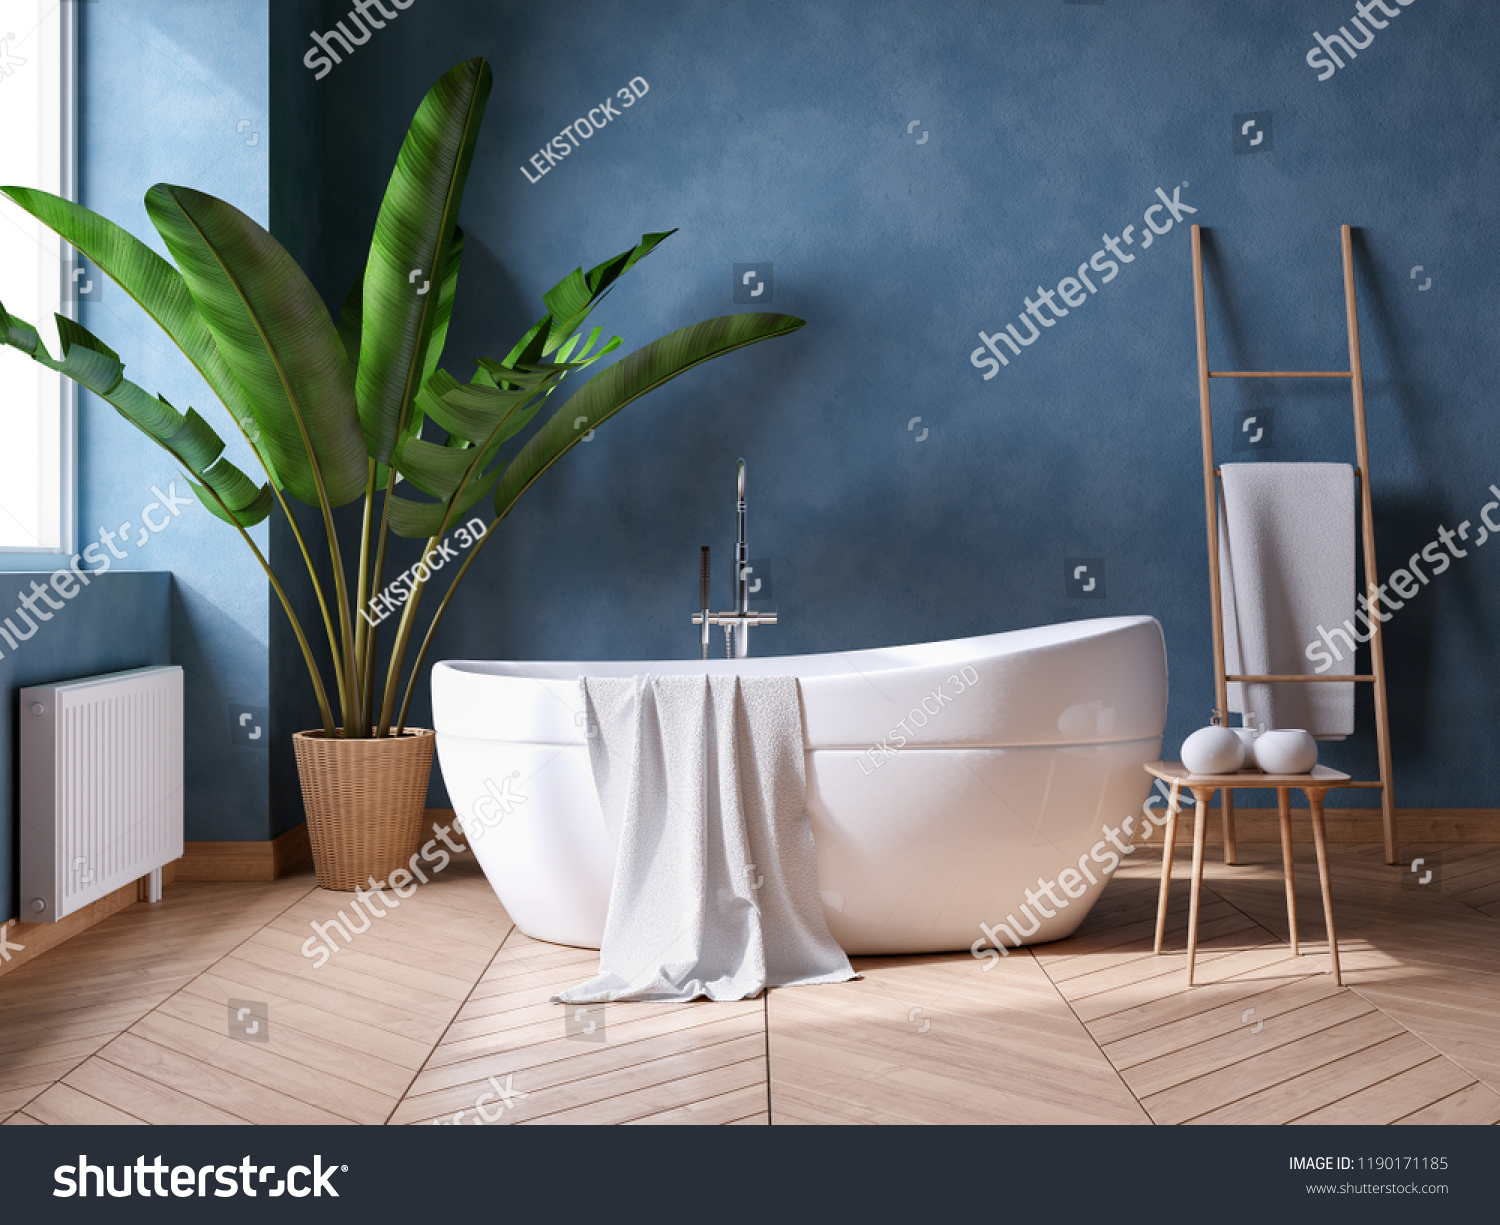 グランジ暗い青の壁に白い浴槽 豪華なモダンバスルームの内装デザイン 3dレンダリング のイラスト素材